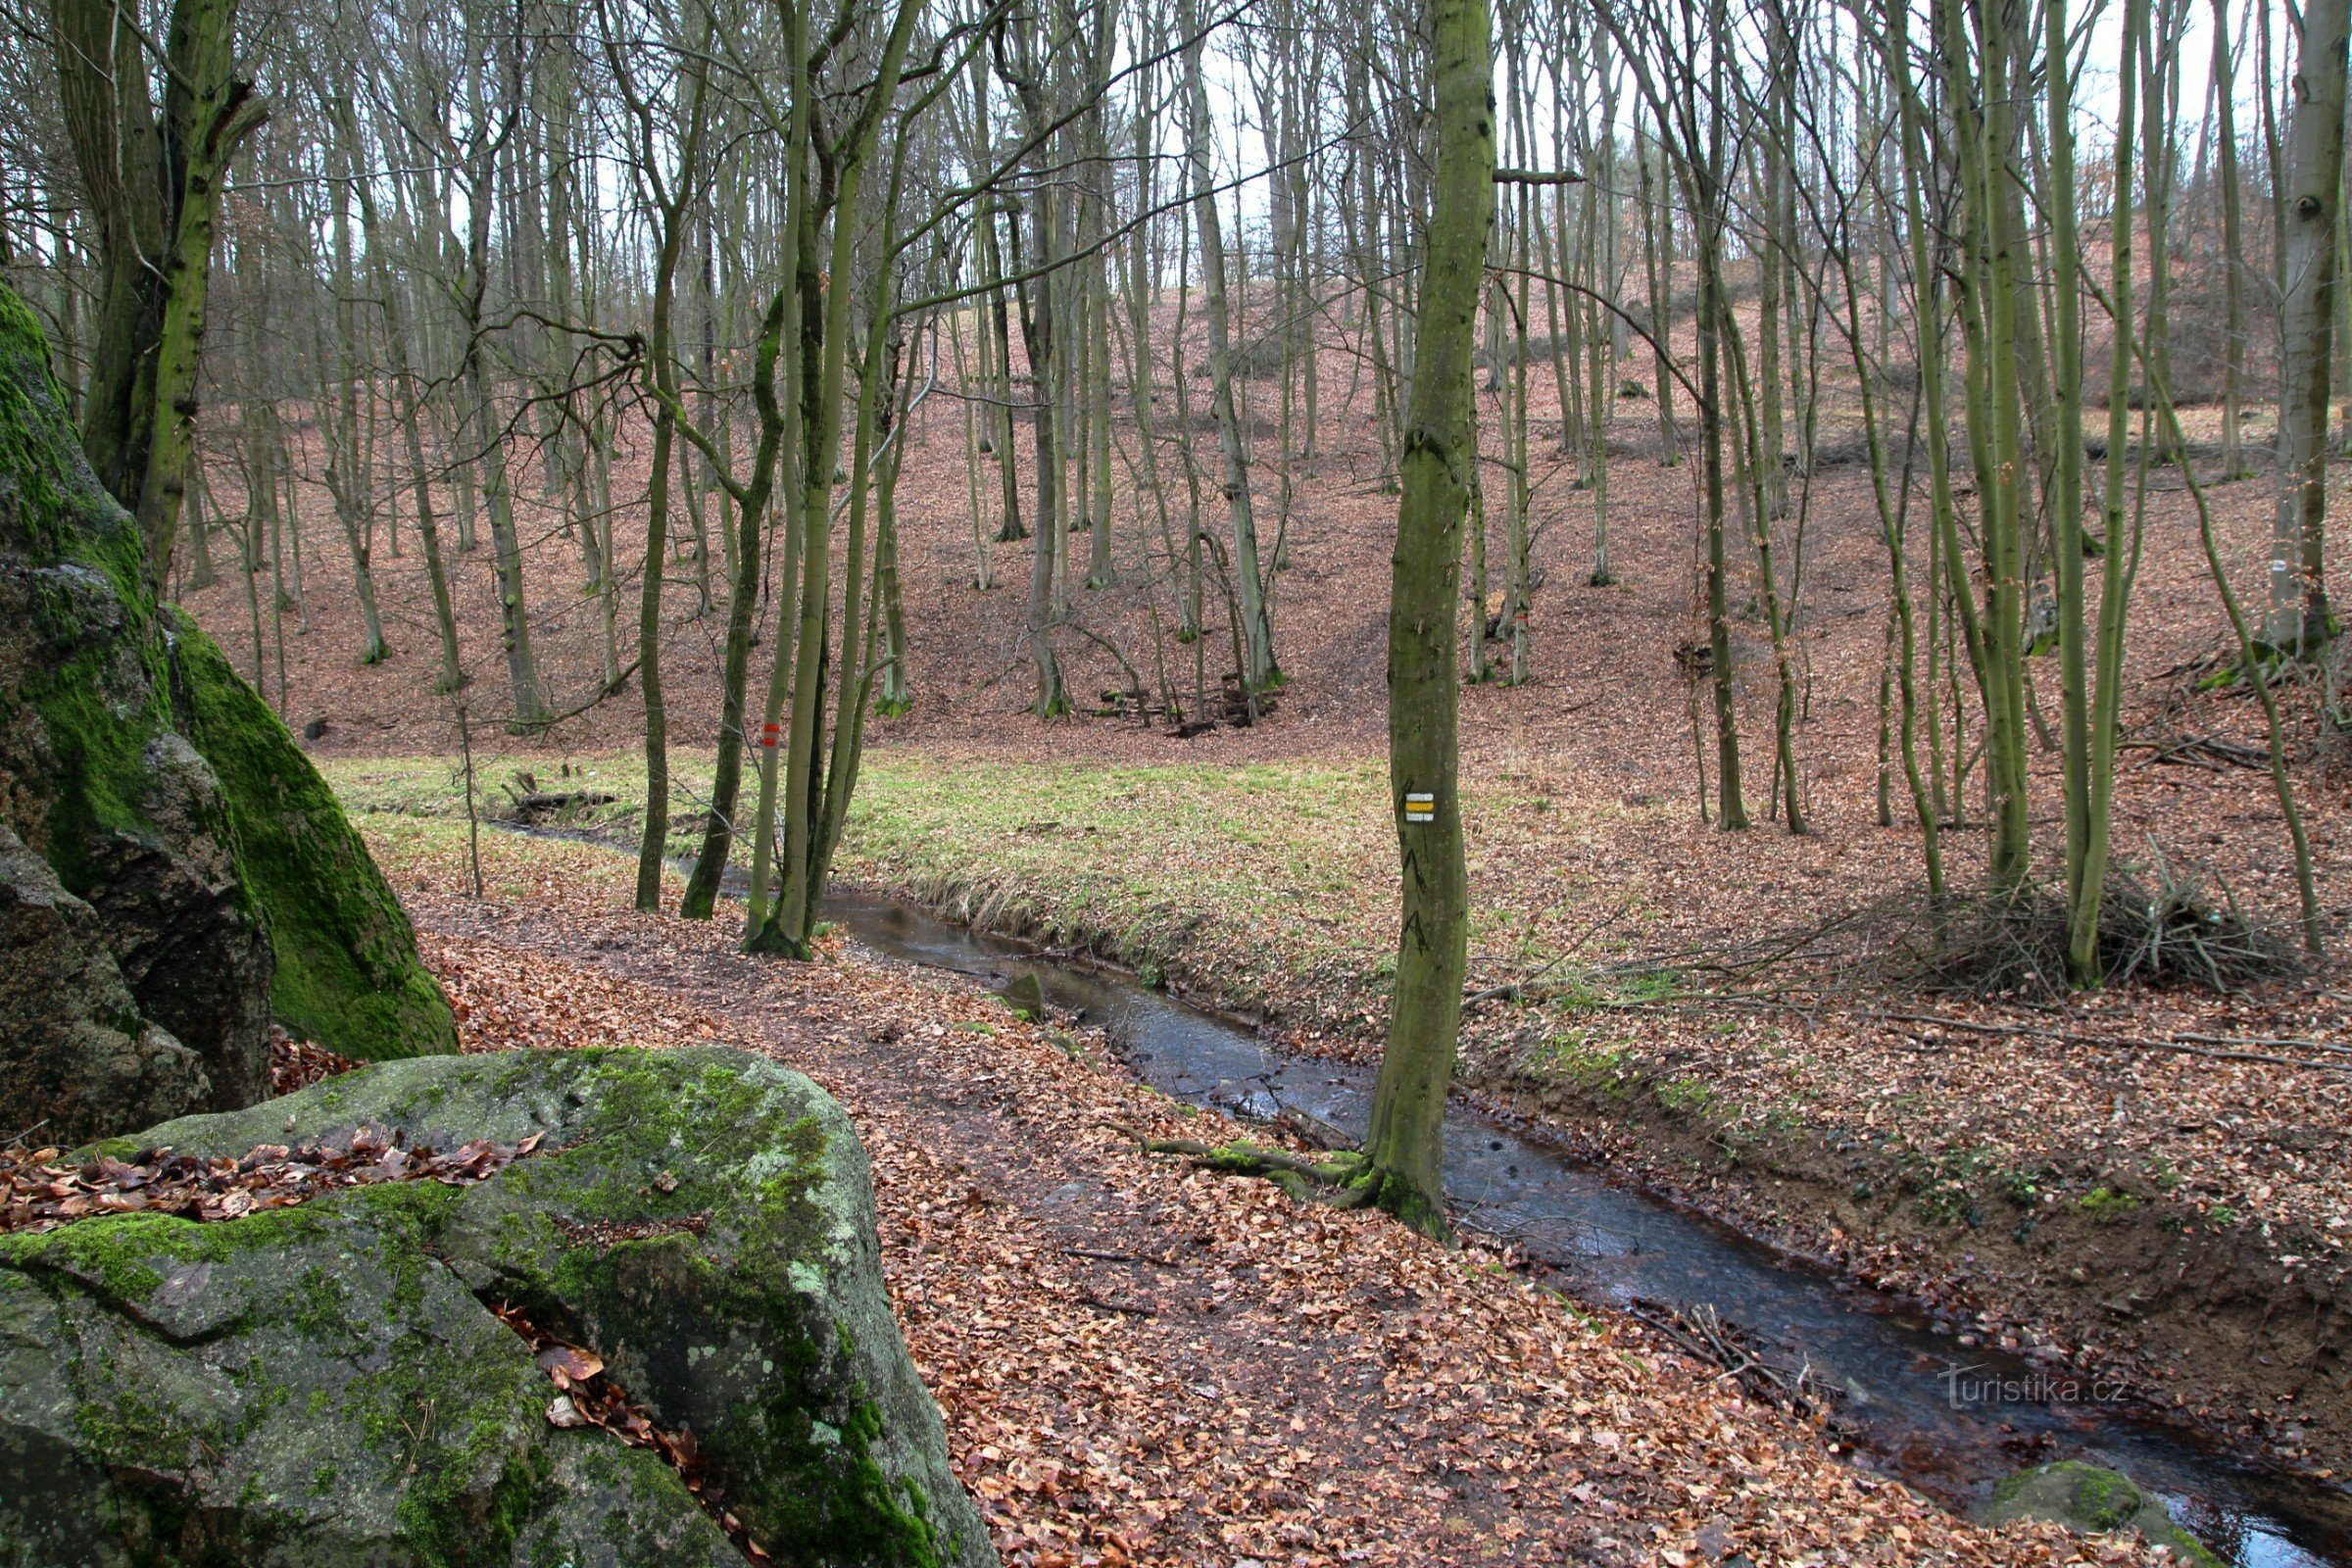 Những mỏm đá trong thung lũng của suối Augšperské, một con đường mòn đi bộ đường dài dẫn quanh suối